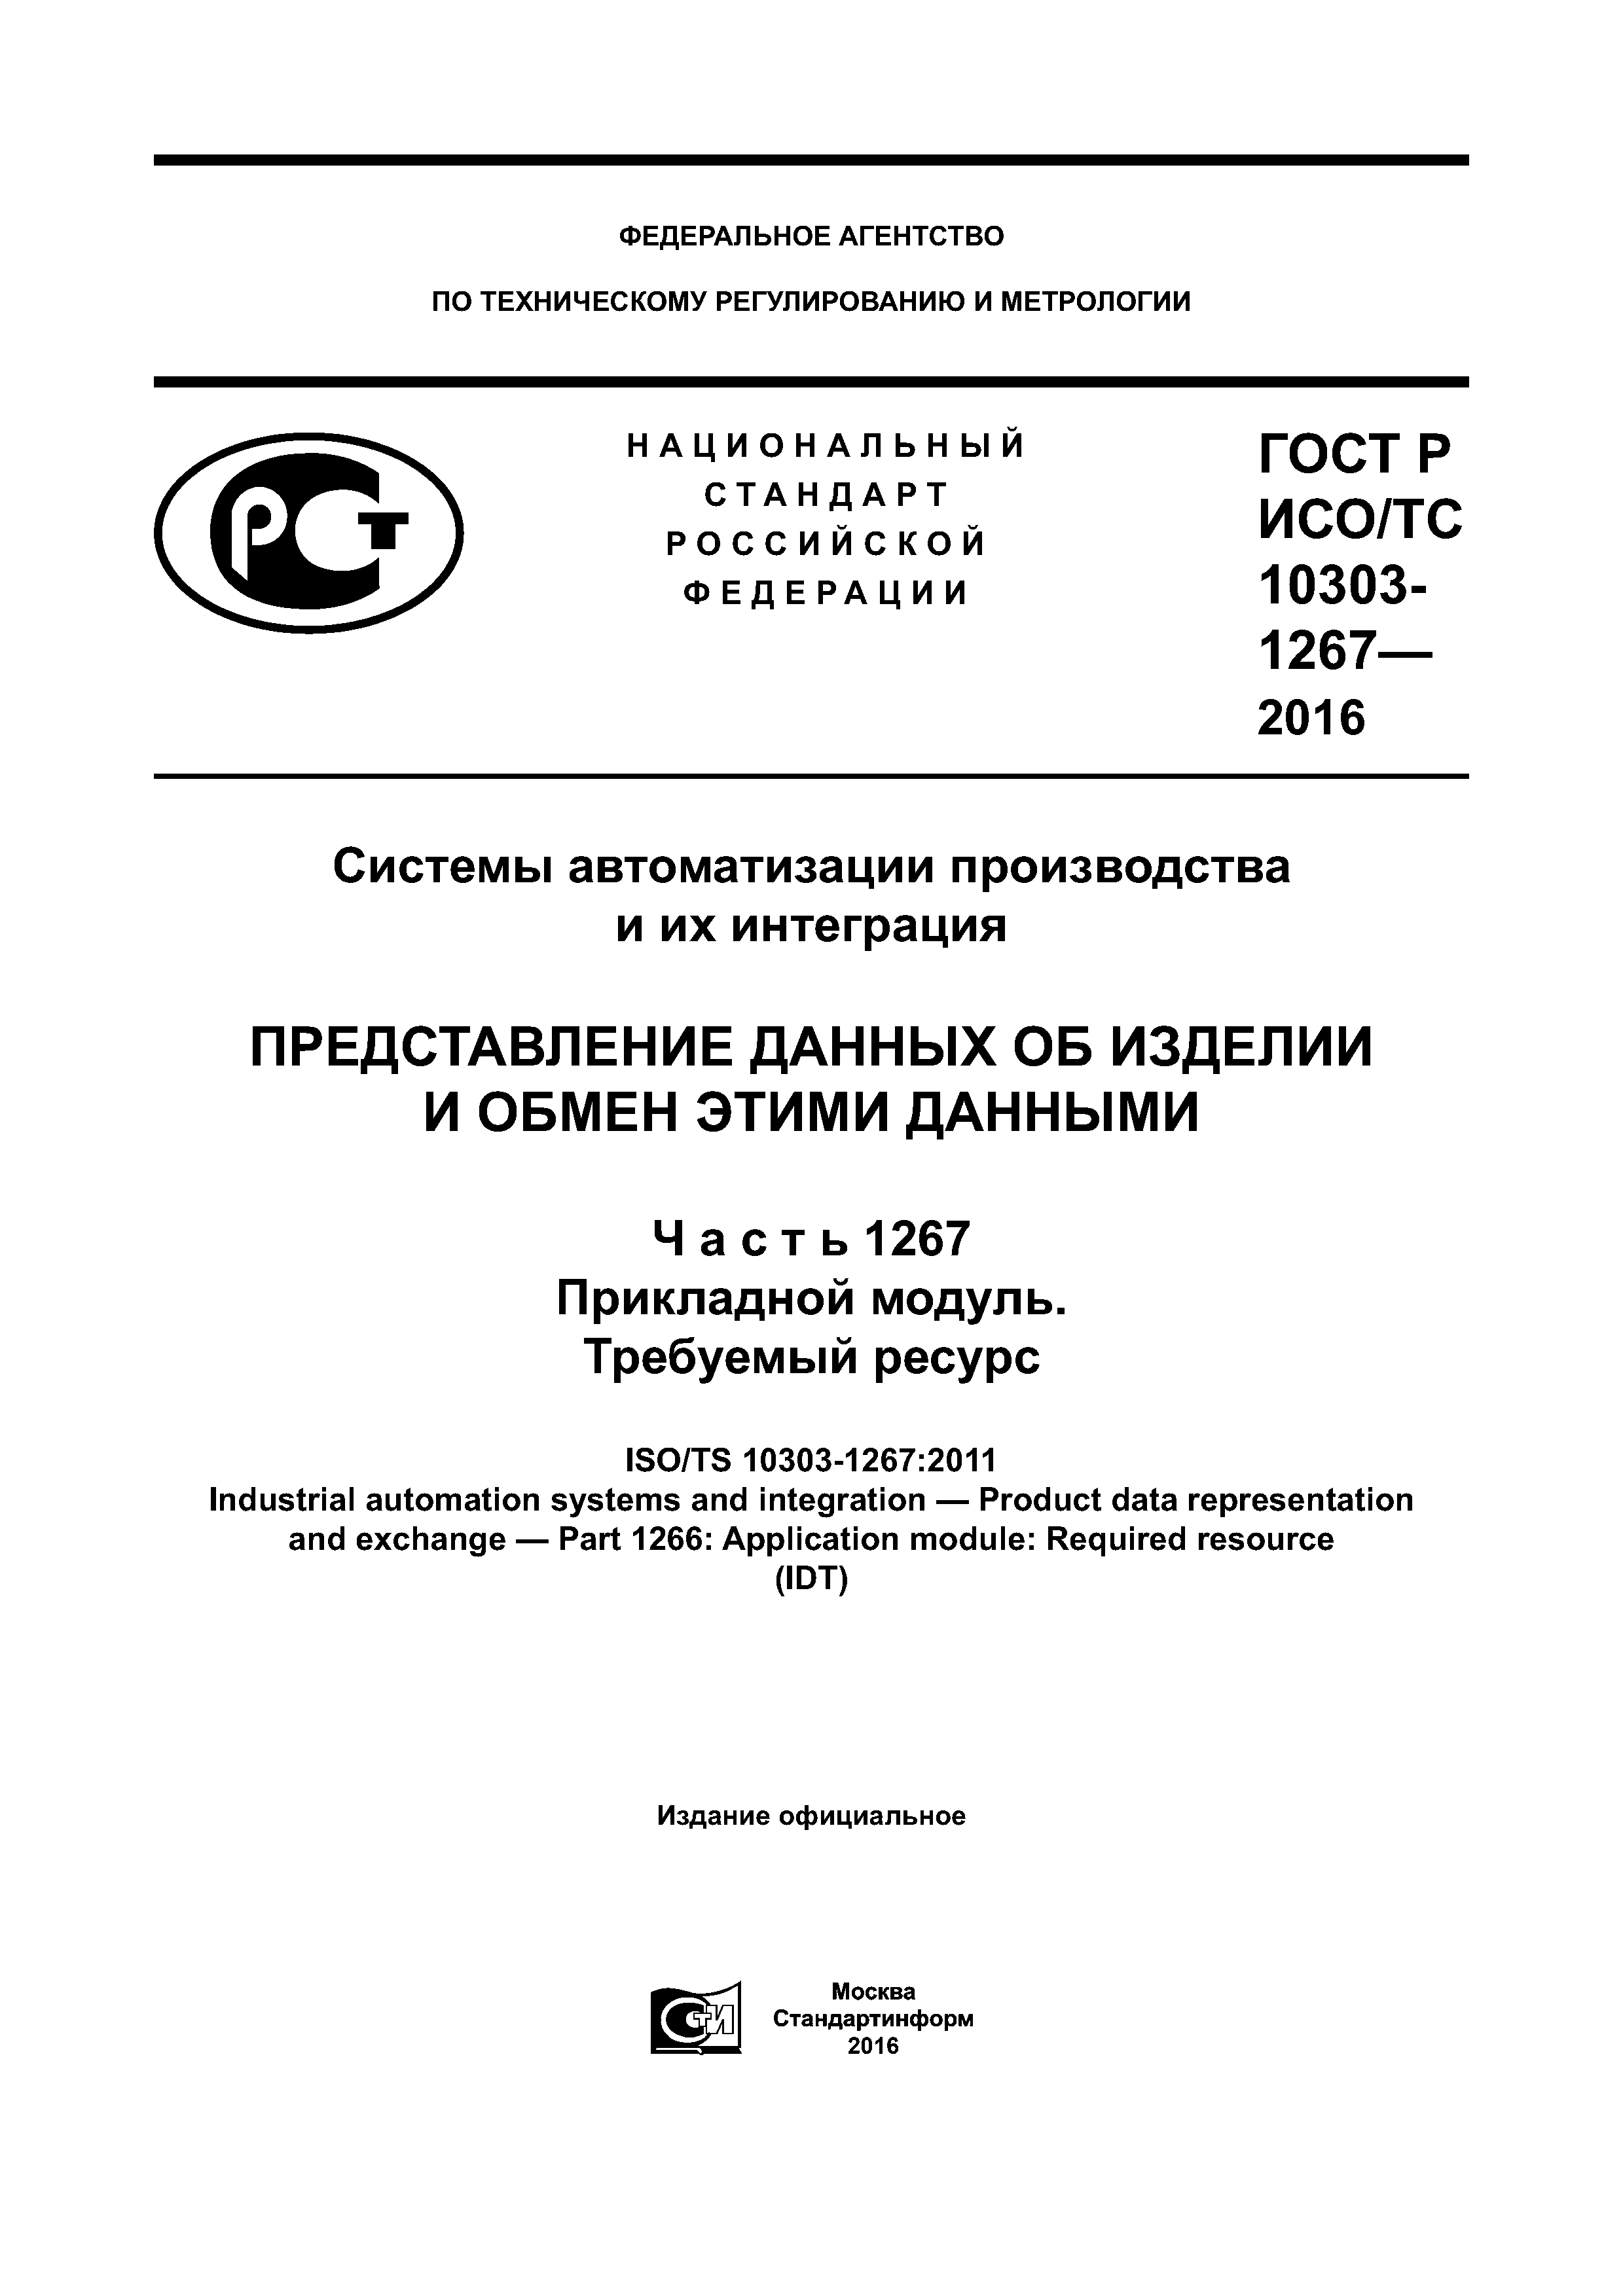 ГОСТ Р ИСО/ТС 10303-1267-2016